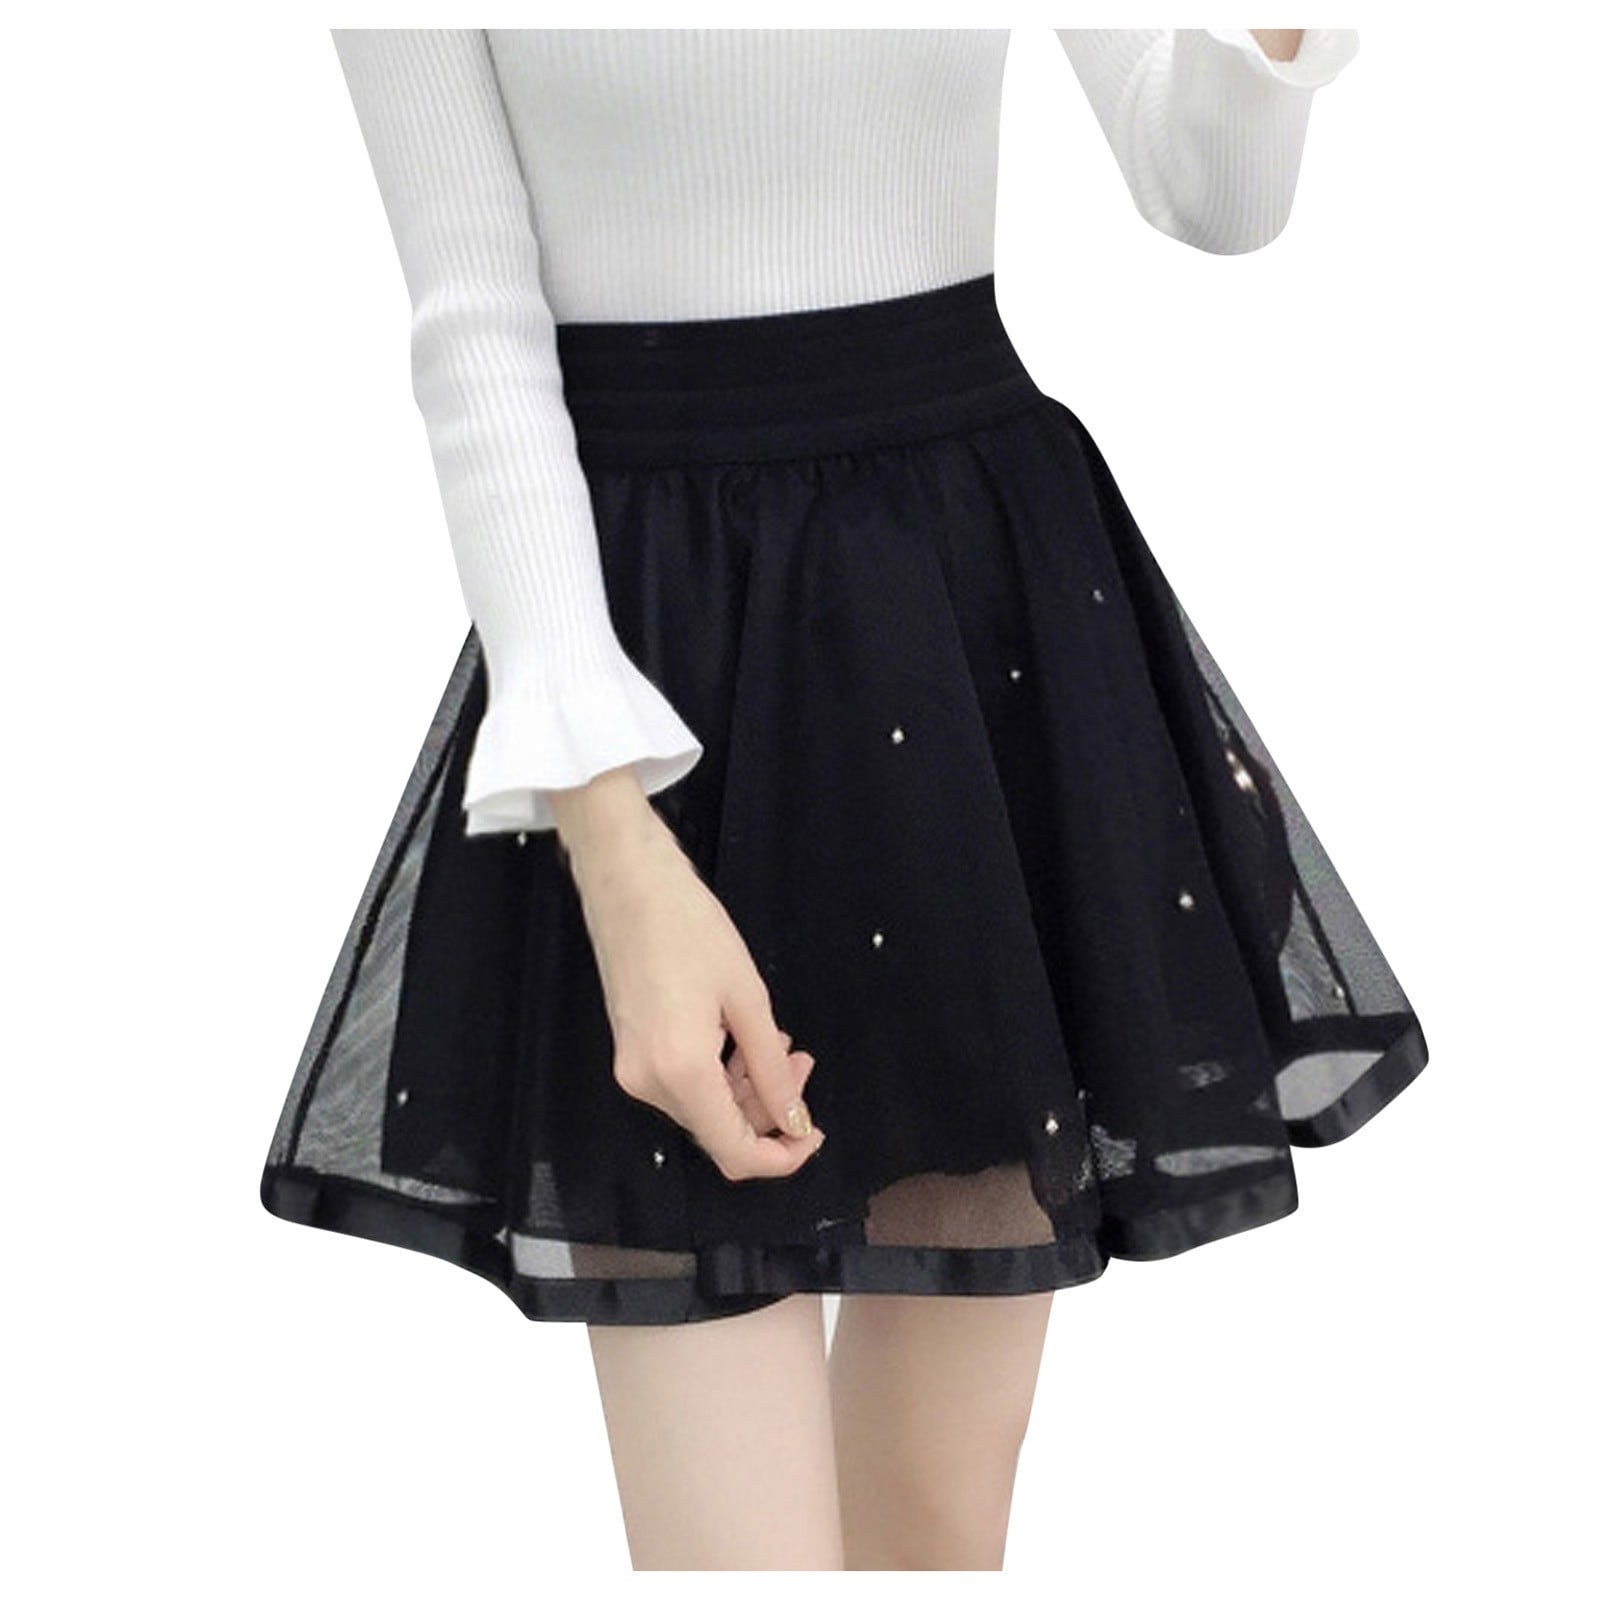 Puffy Skirt For Women Skater Skirt Stretchy A Line Flared Mini Casual Versatile Womens Skirt 